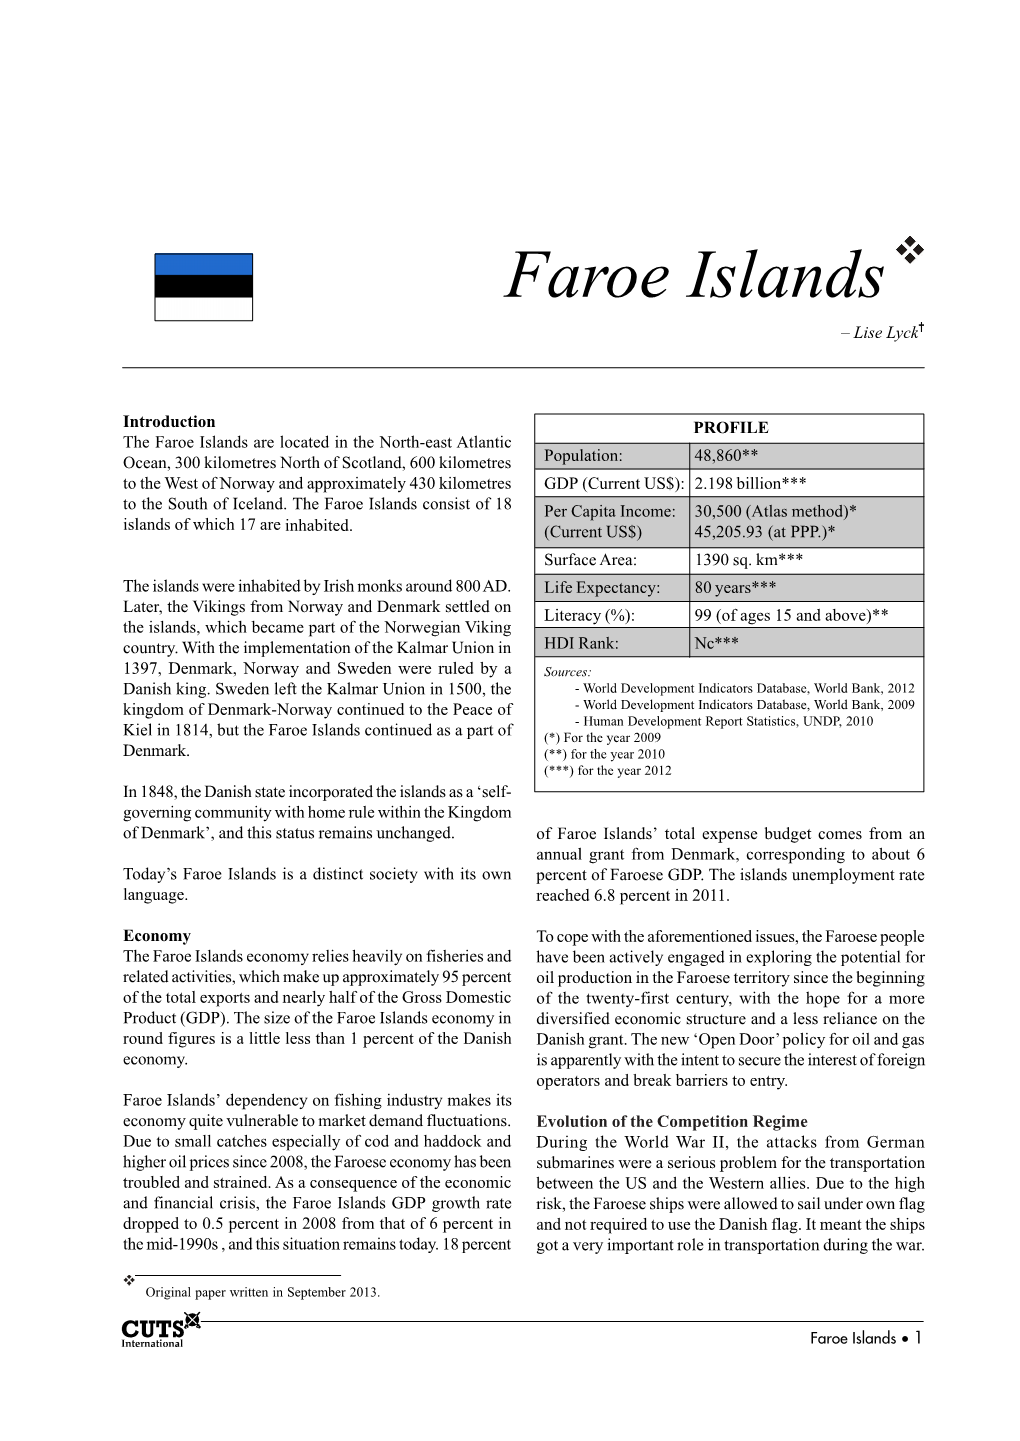 Faroe Islands – Lise Lyck